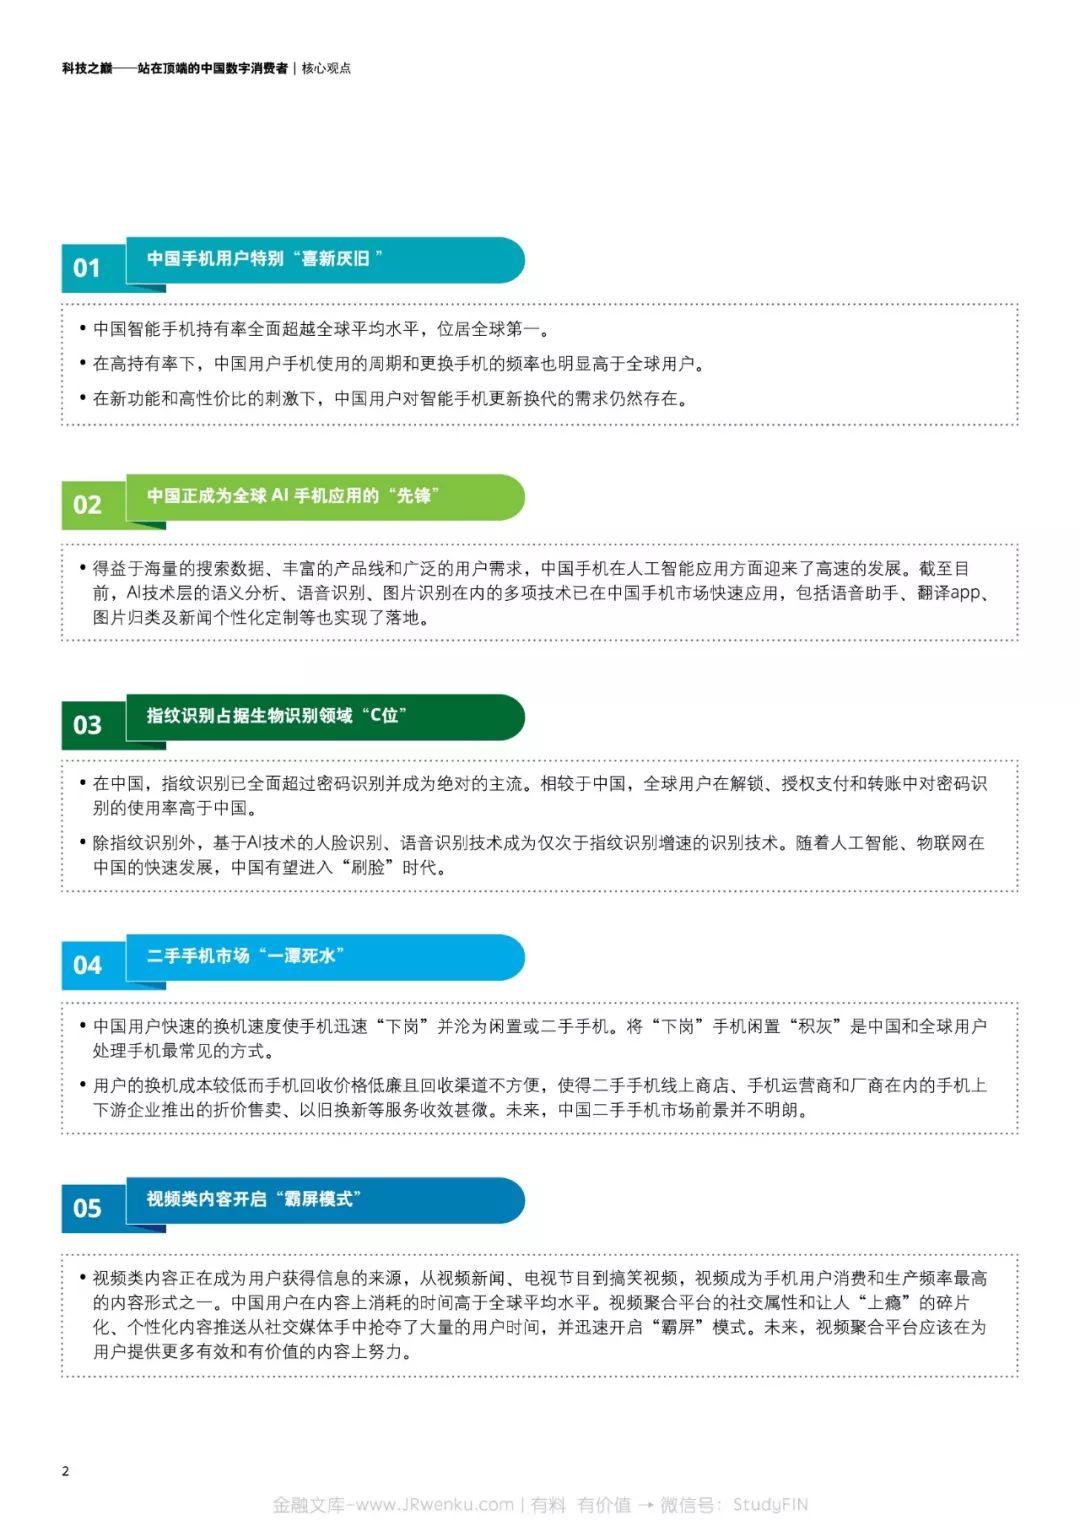 德勤：2018中国移动消费者调研(24页)